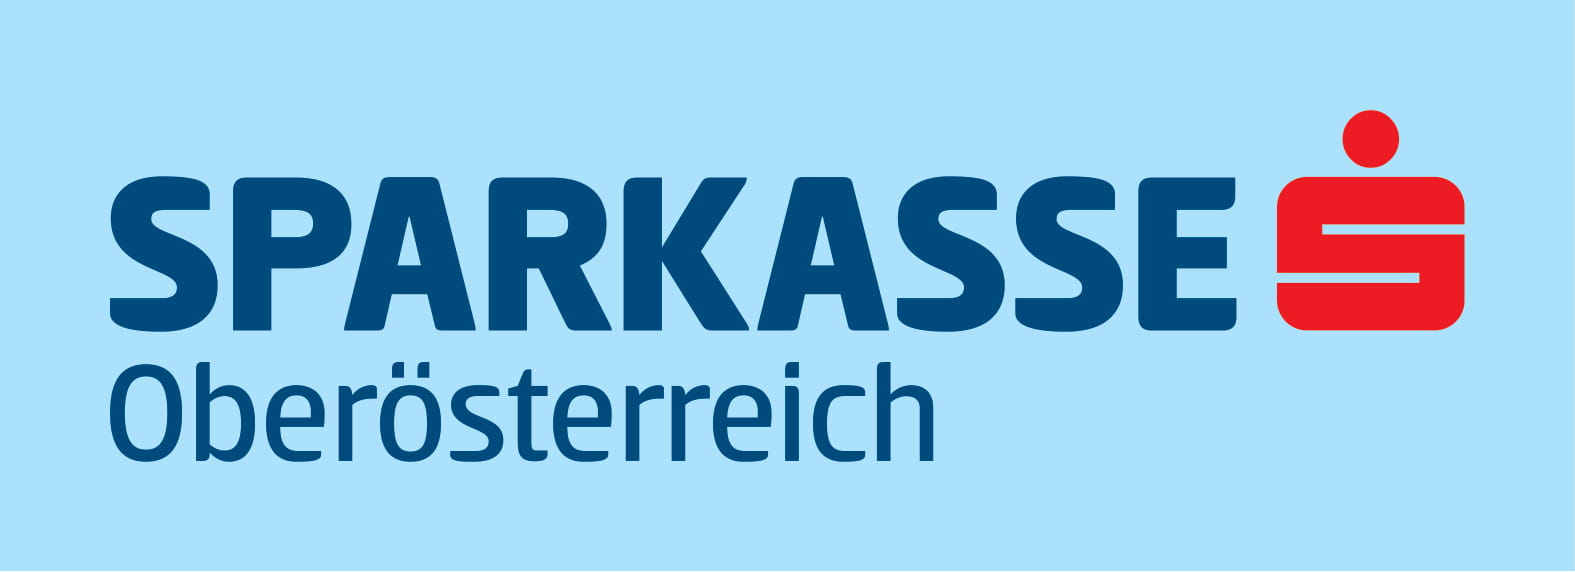 SPK Oberoesterreich print external material 1